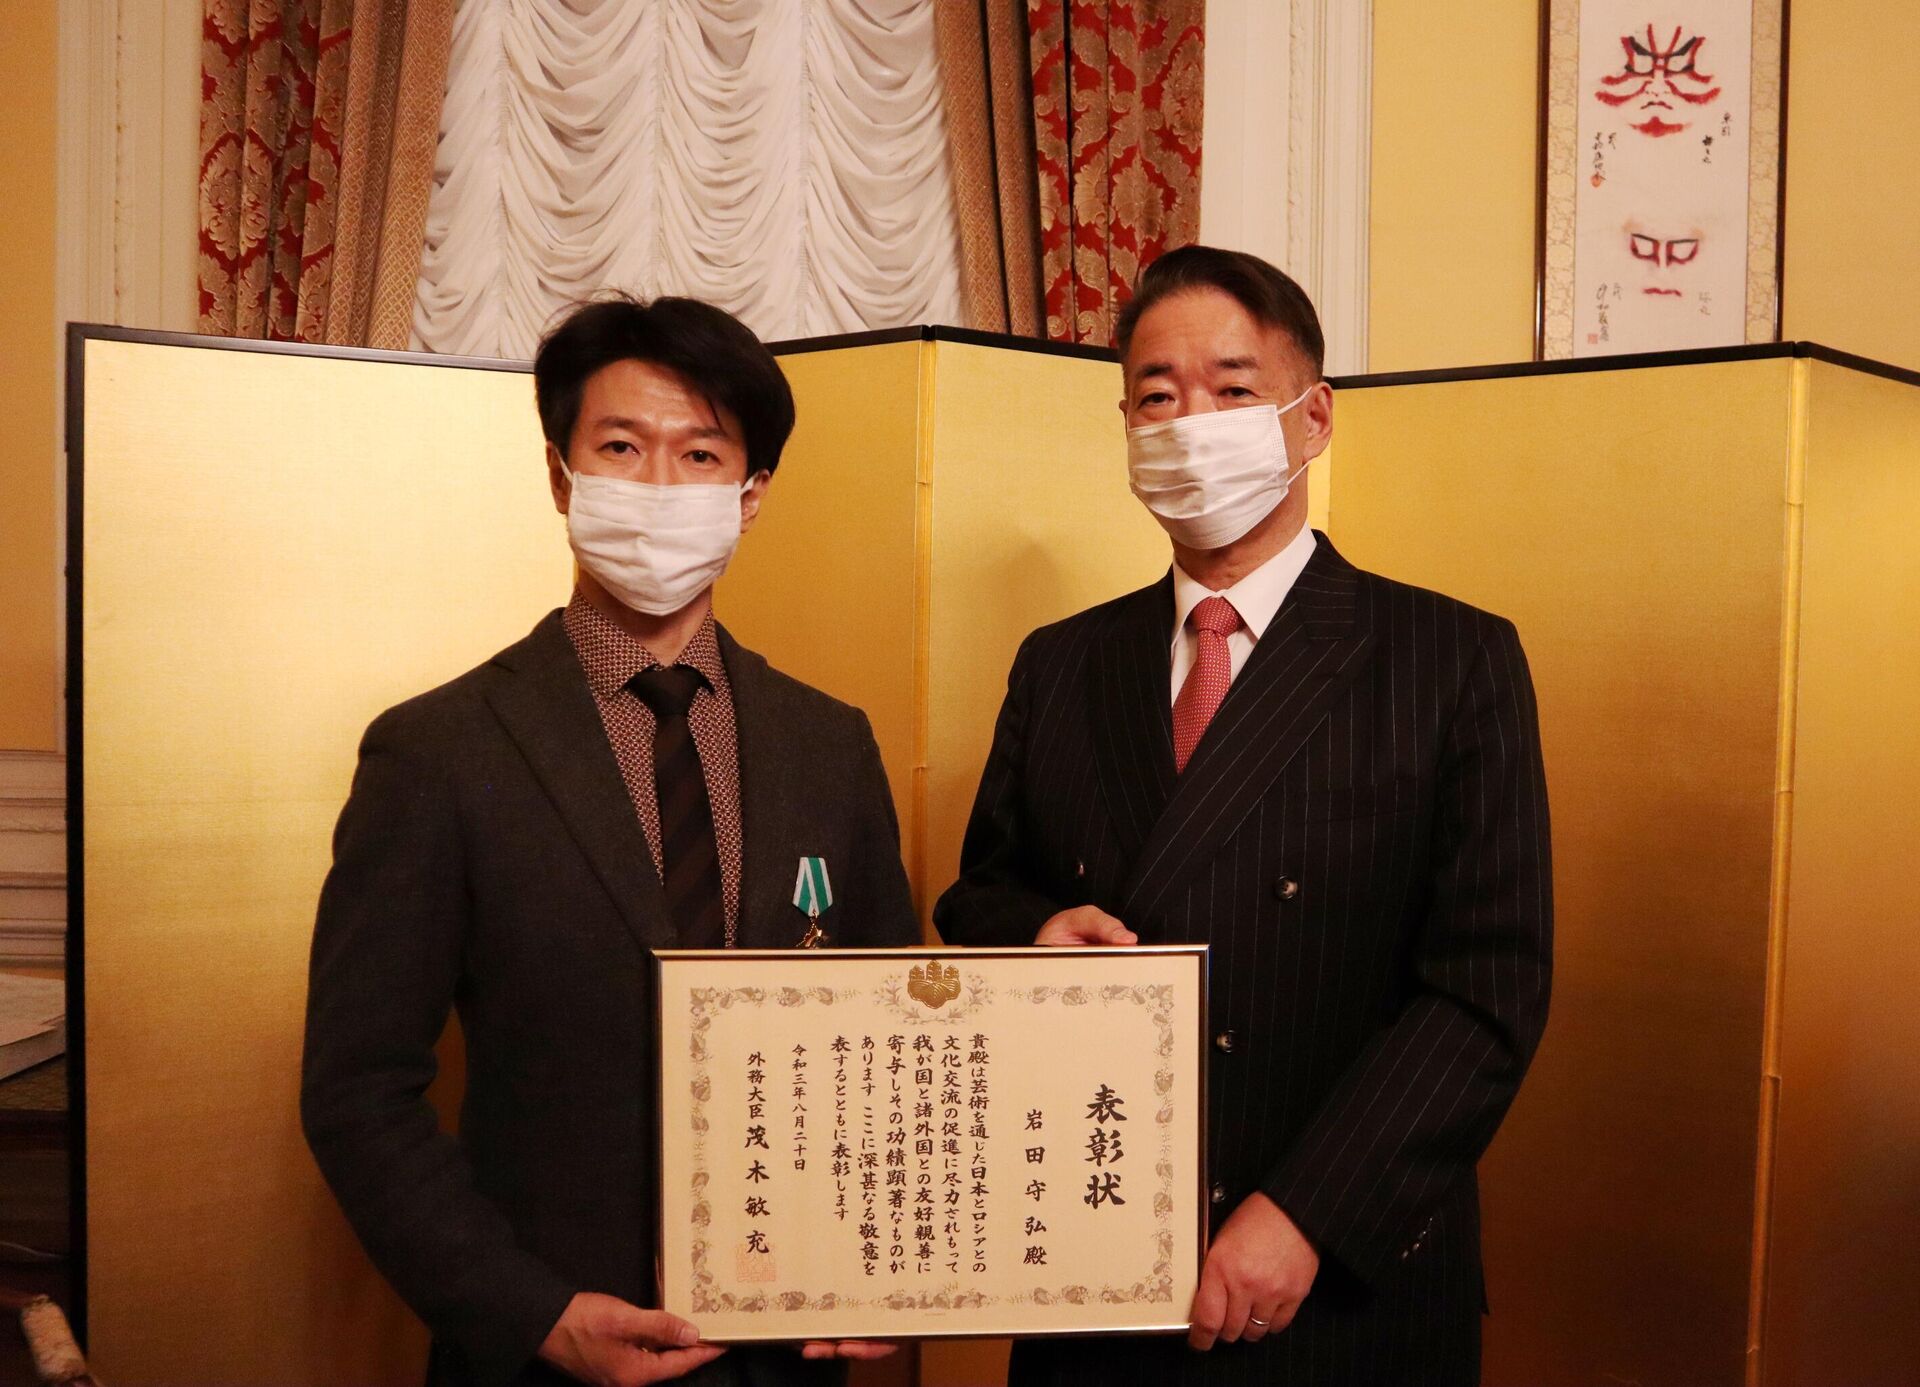 大使公邸にて授与式。岩田守弘さん（左）と上月豊久駐ロシア大使（右） - Sputnik 日本, 1920, 22.10.2021